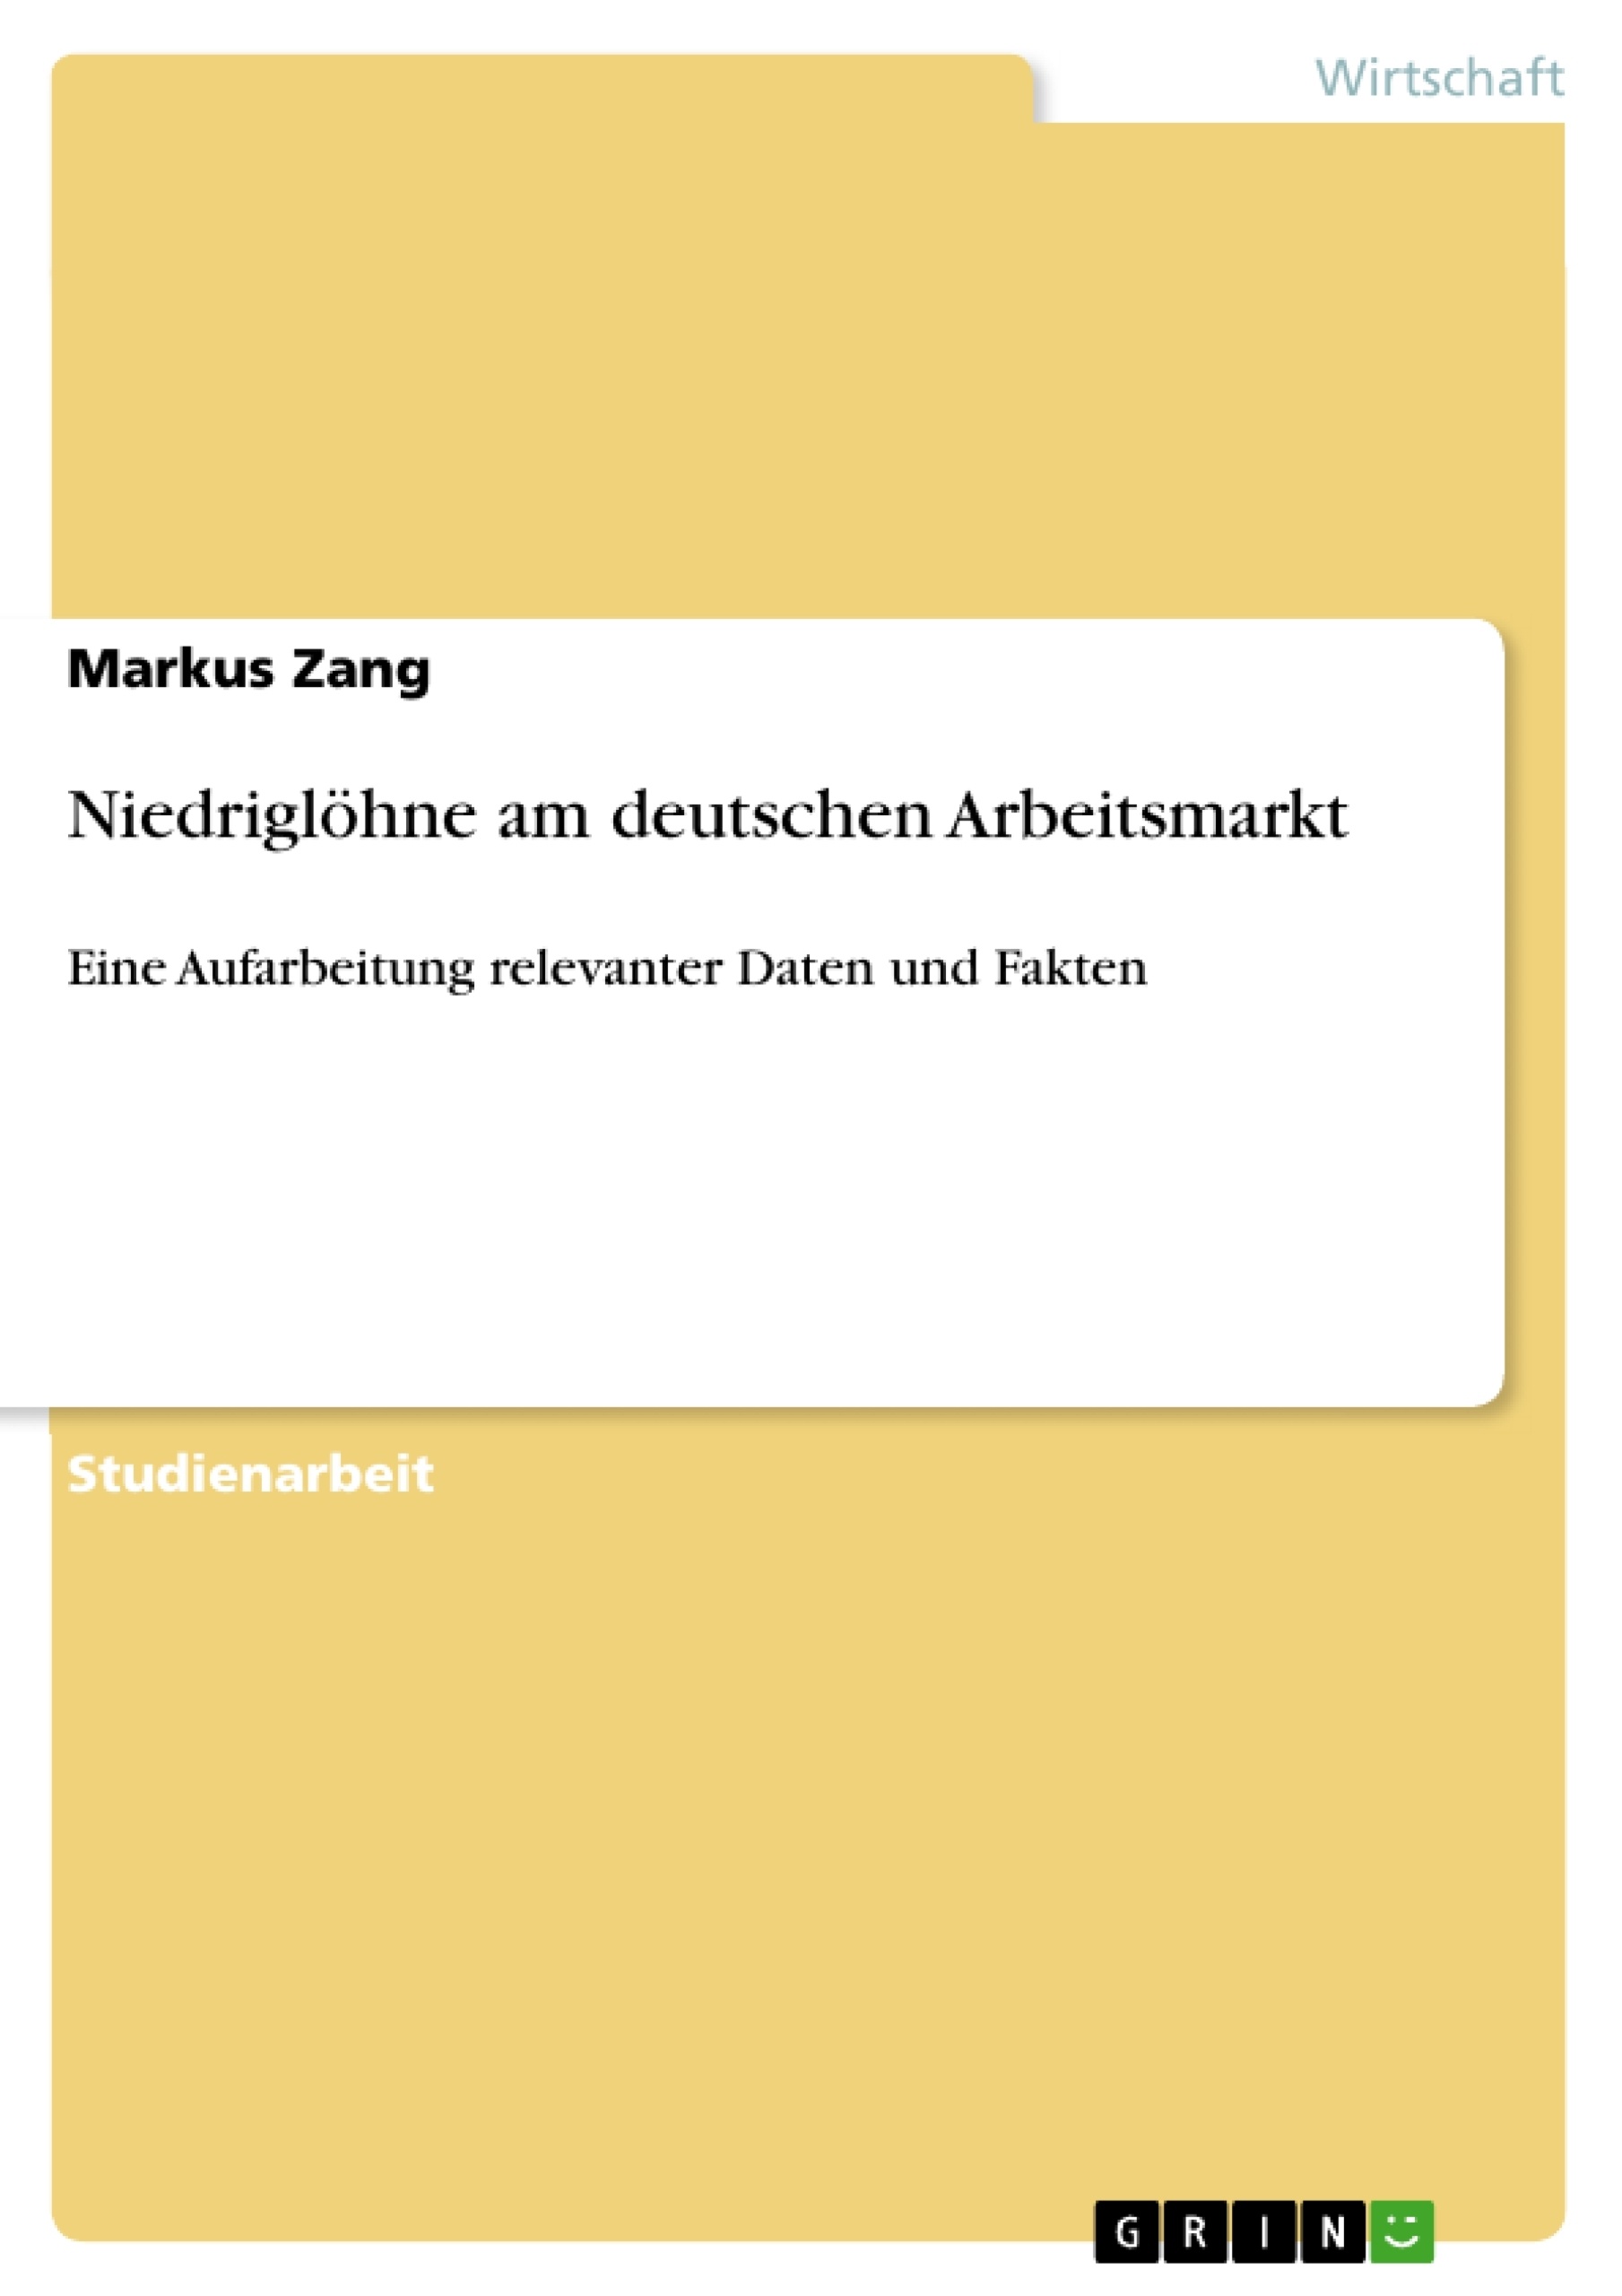 Titre: Niedriglöhne am deutschen Arbeitsmarkt